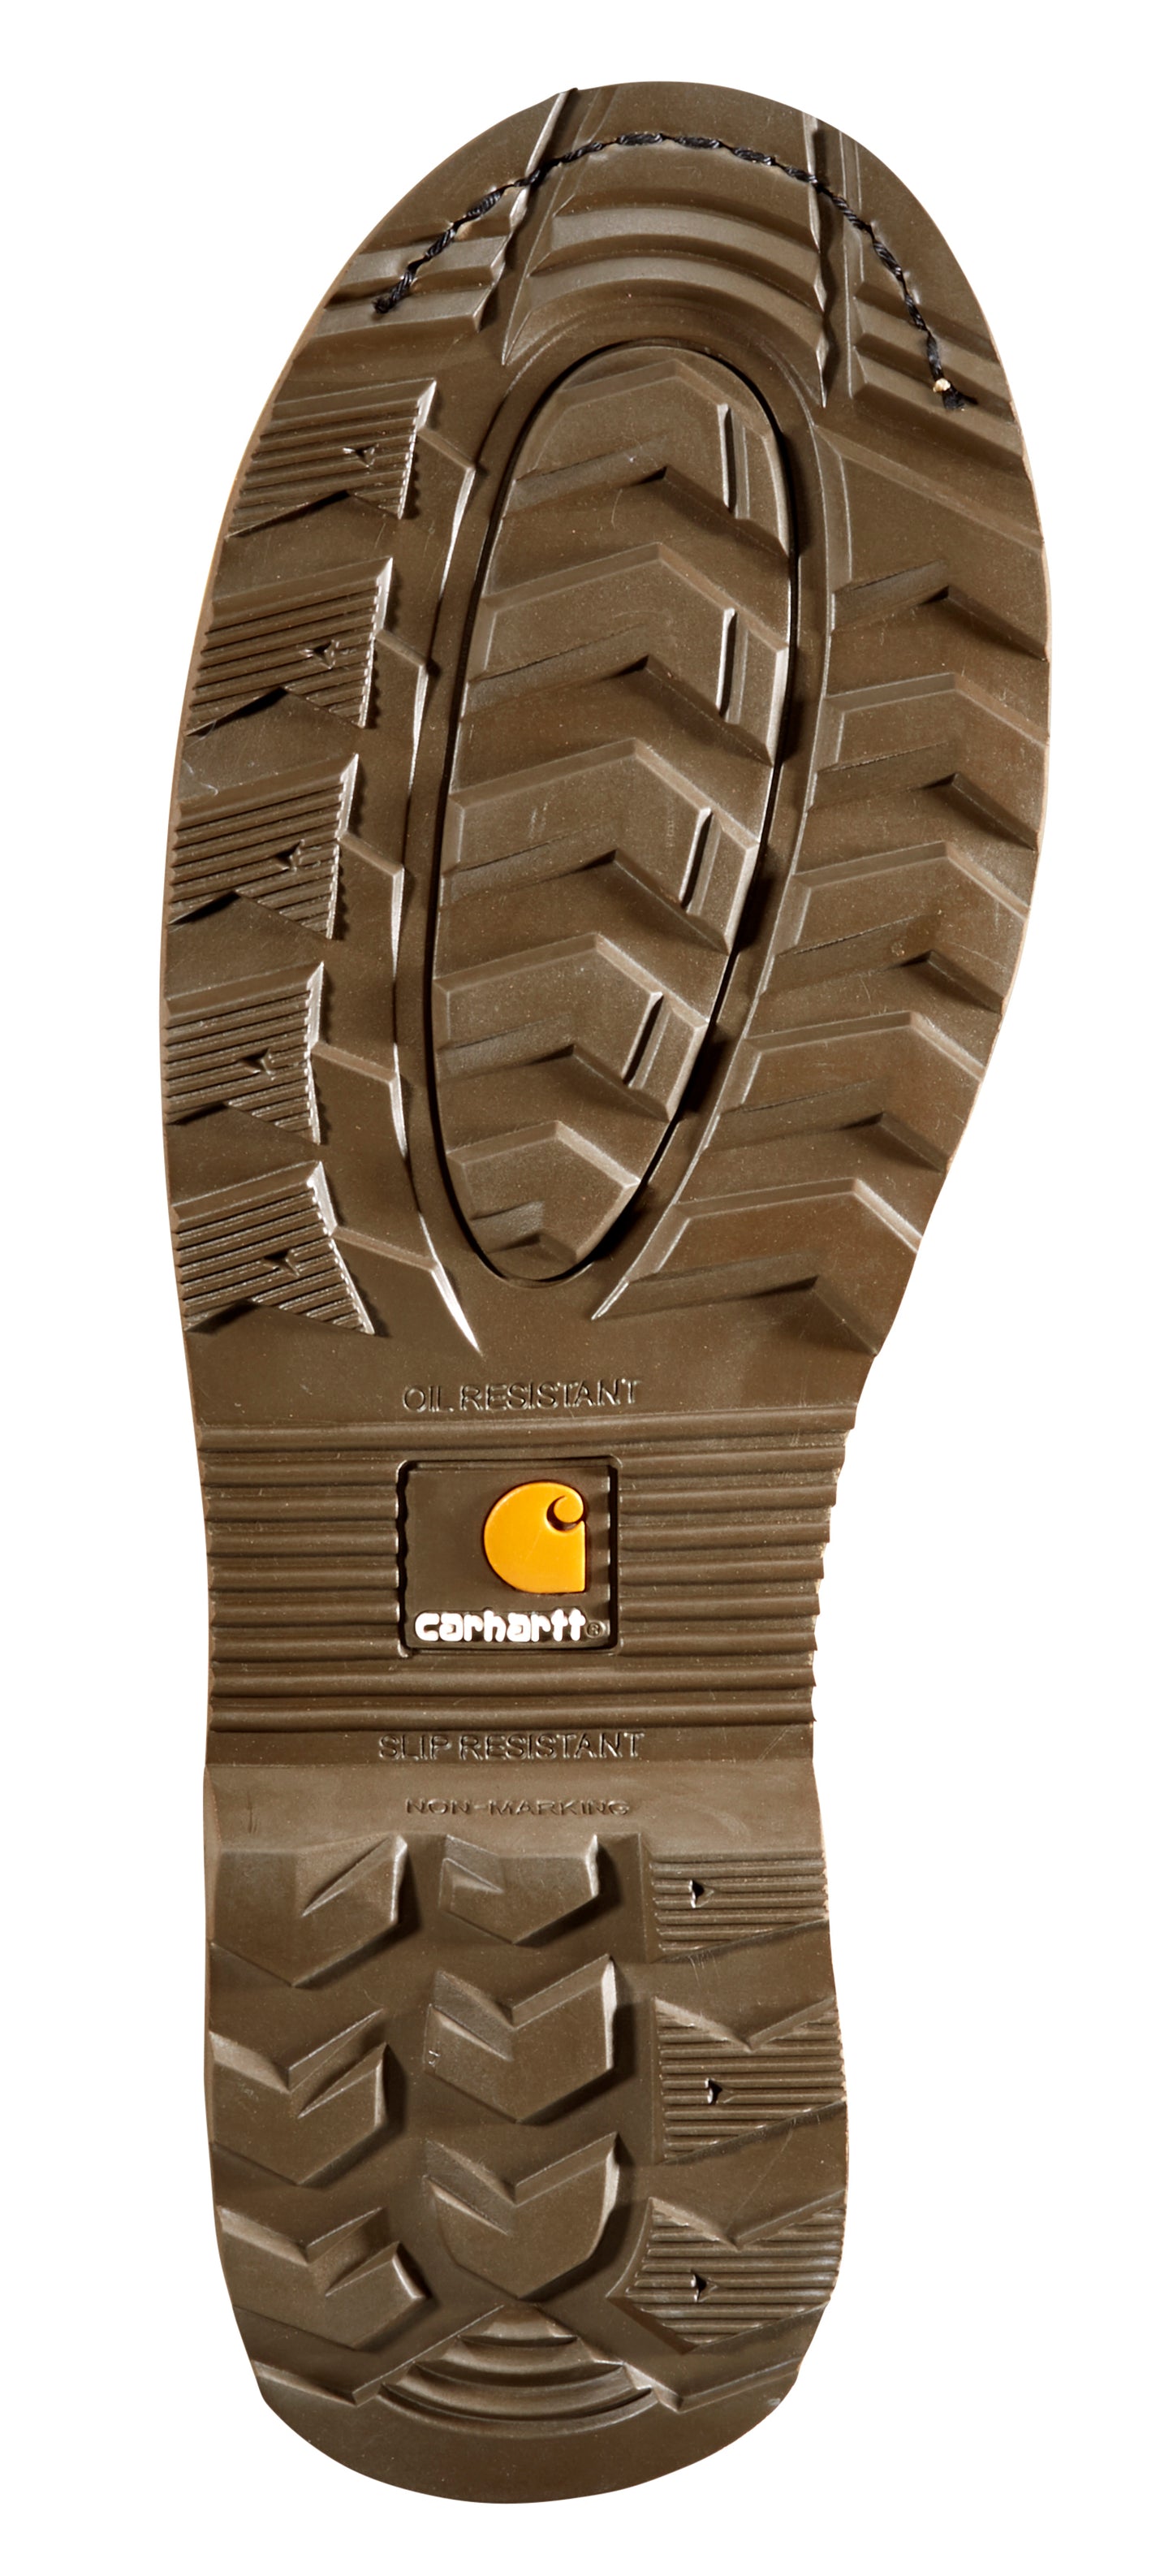 Carhartt Men's 6-Inch Waterproof Work Boot